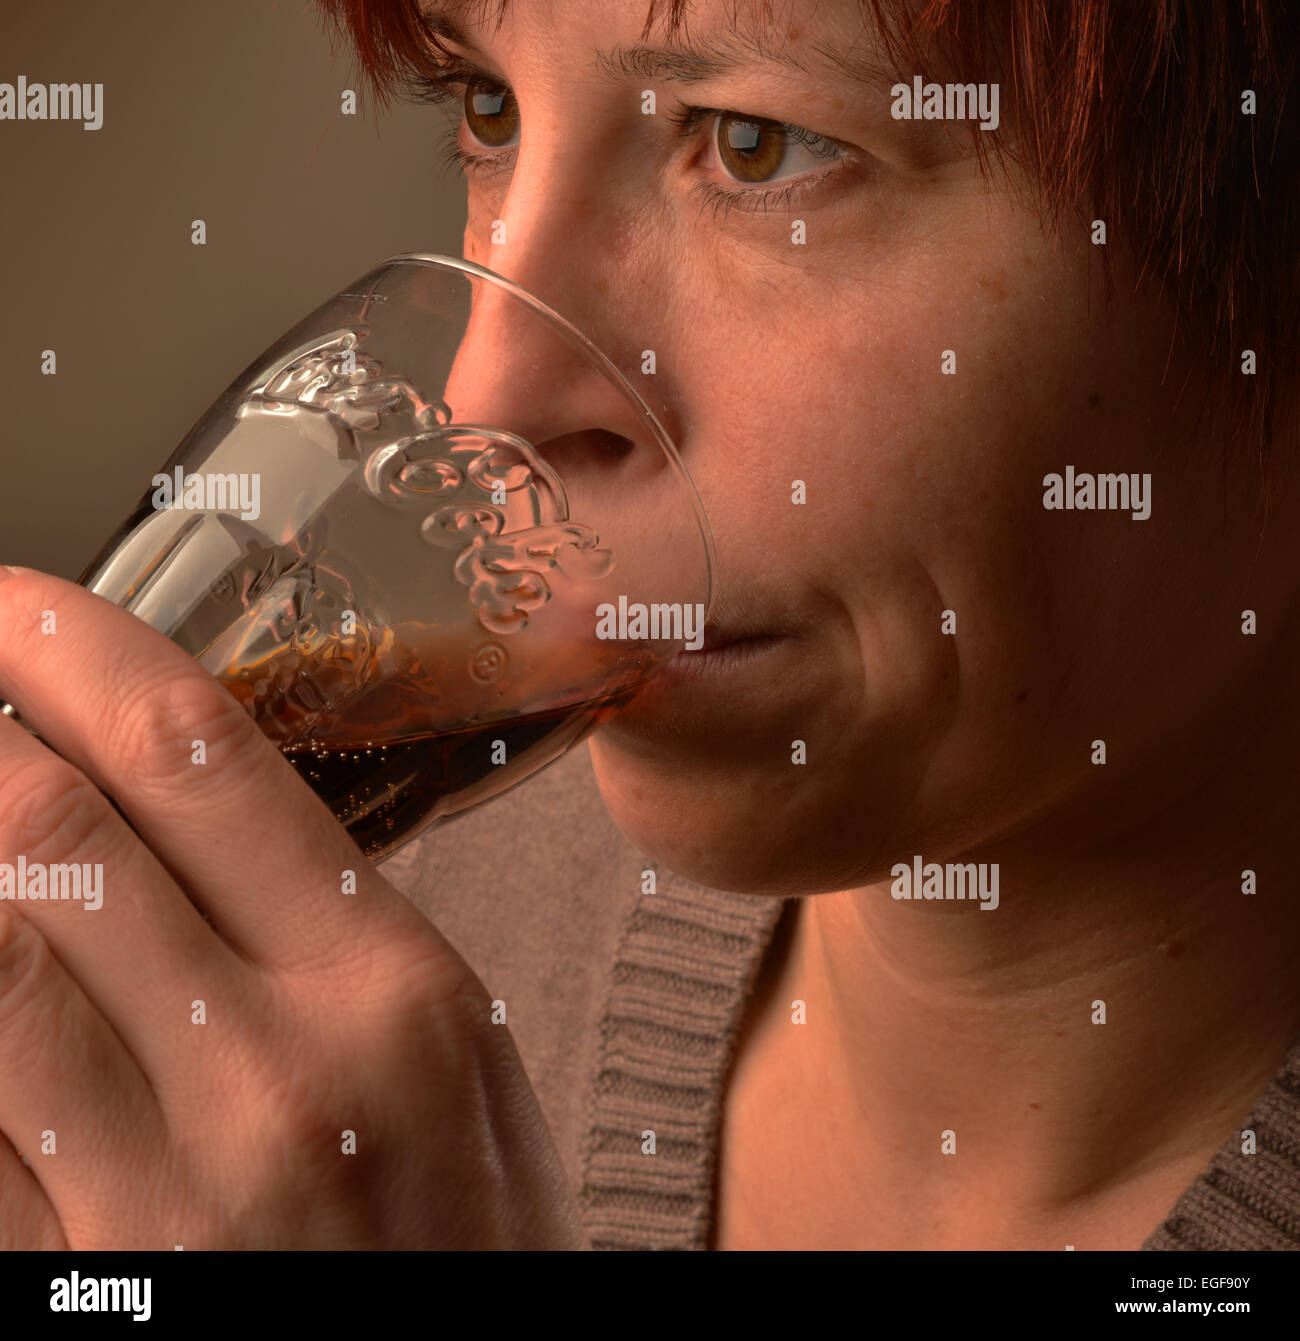 Foto di simbolo circa zucchero in alimenti e bevande: Donna bere Coca-Cola. Foto: Klaus Rose Foto Stock